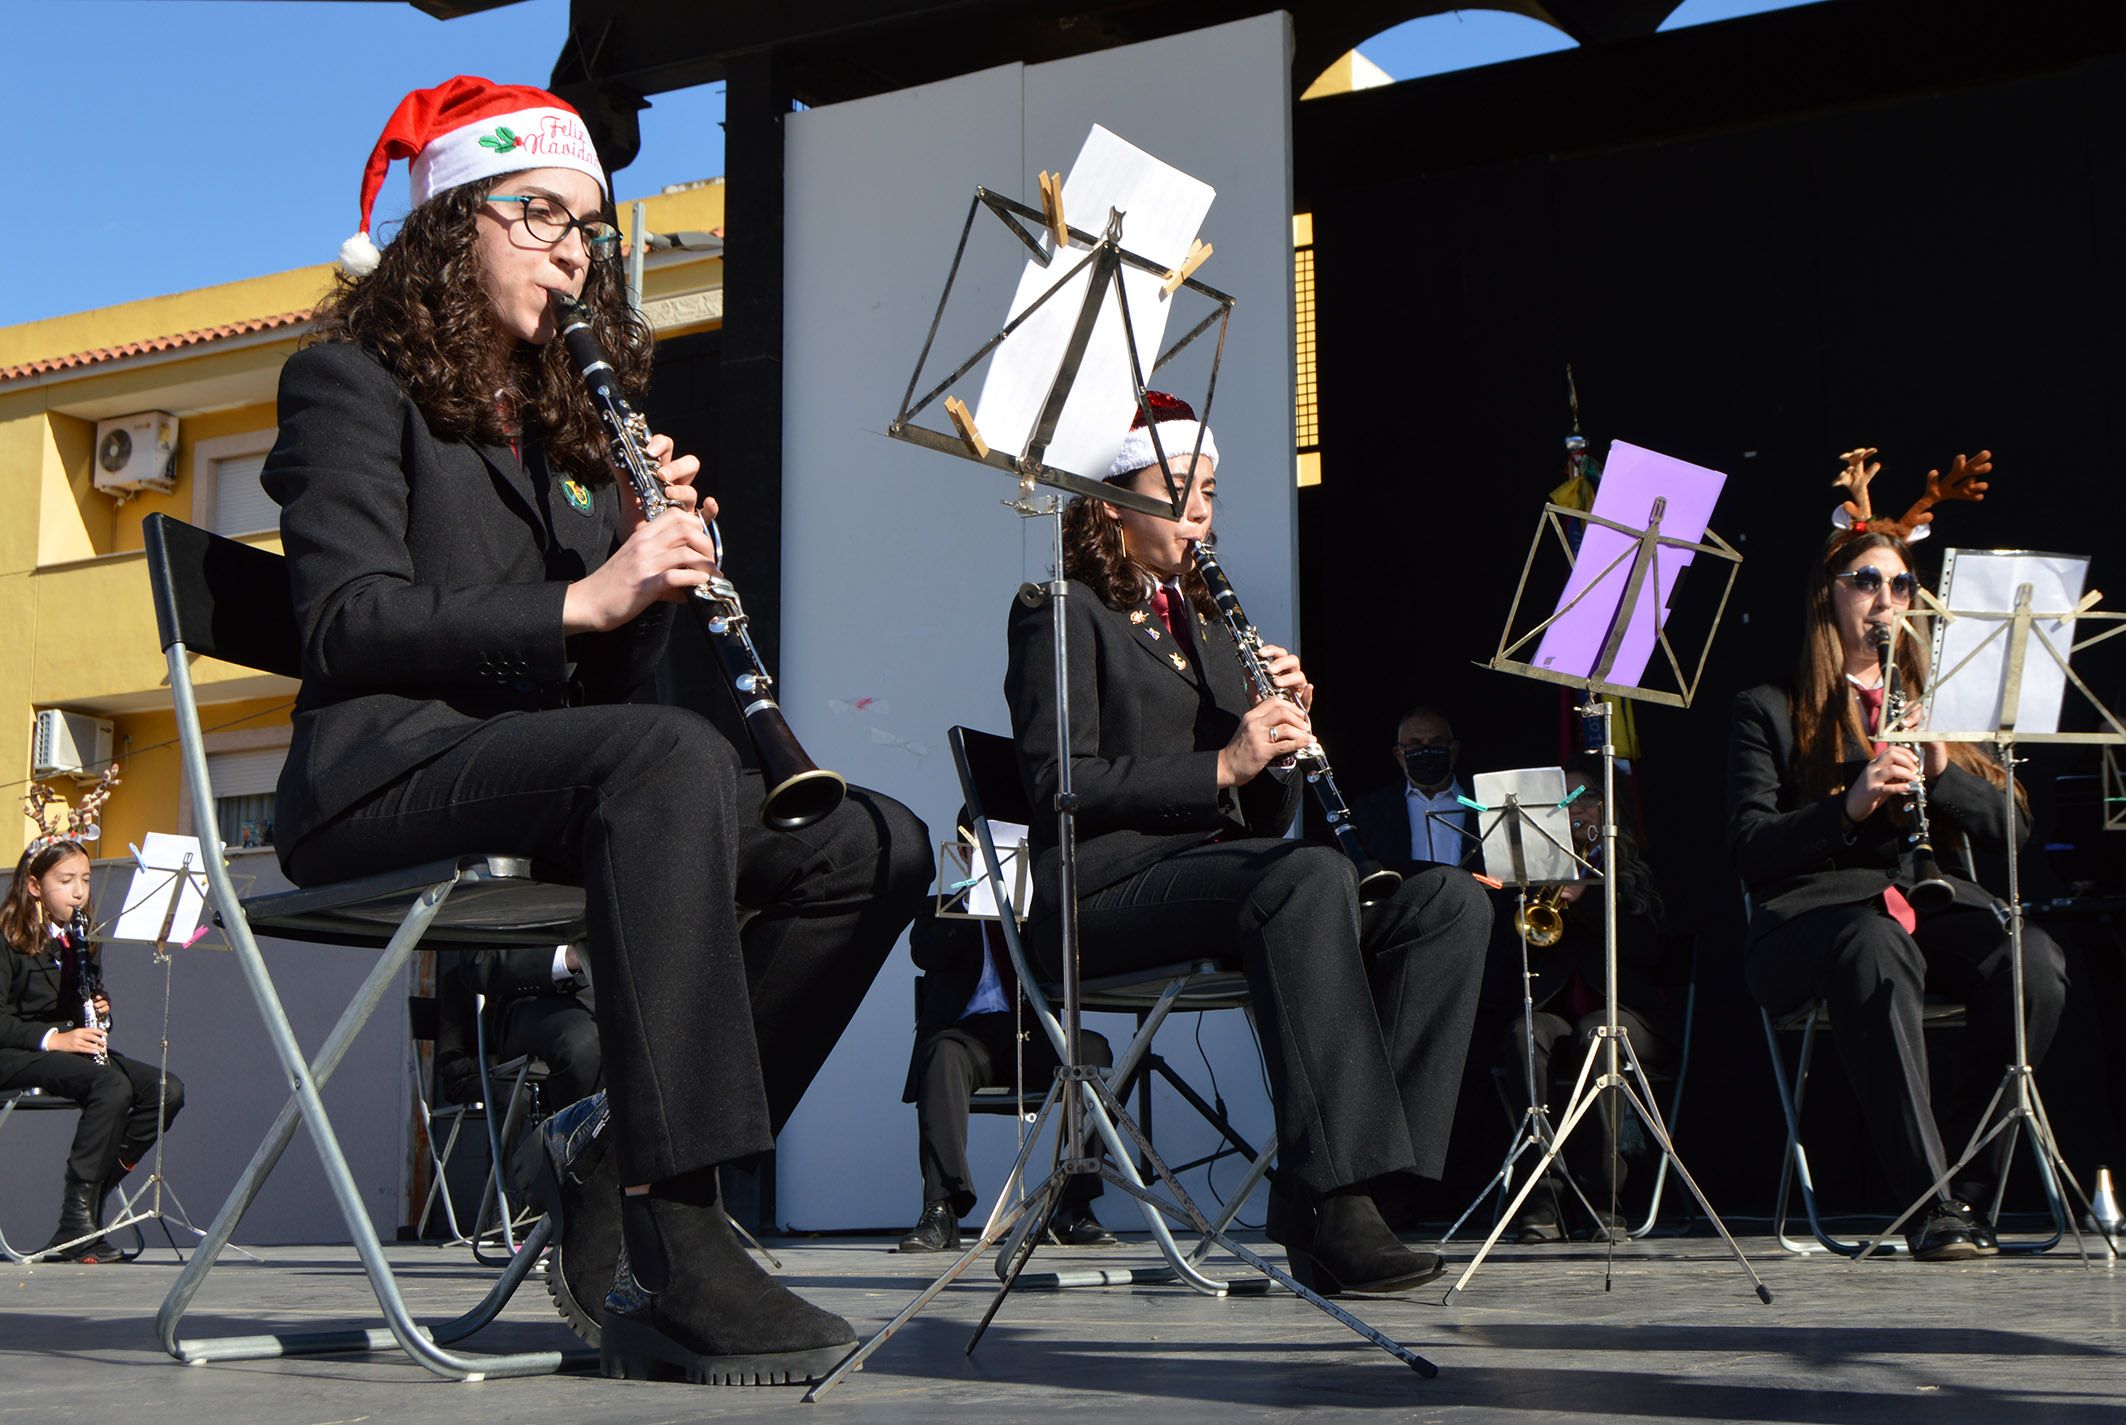 Entrañable concierto navideño de la asociación Amigos de la Música de Las Torres de Cotillas4